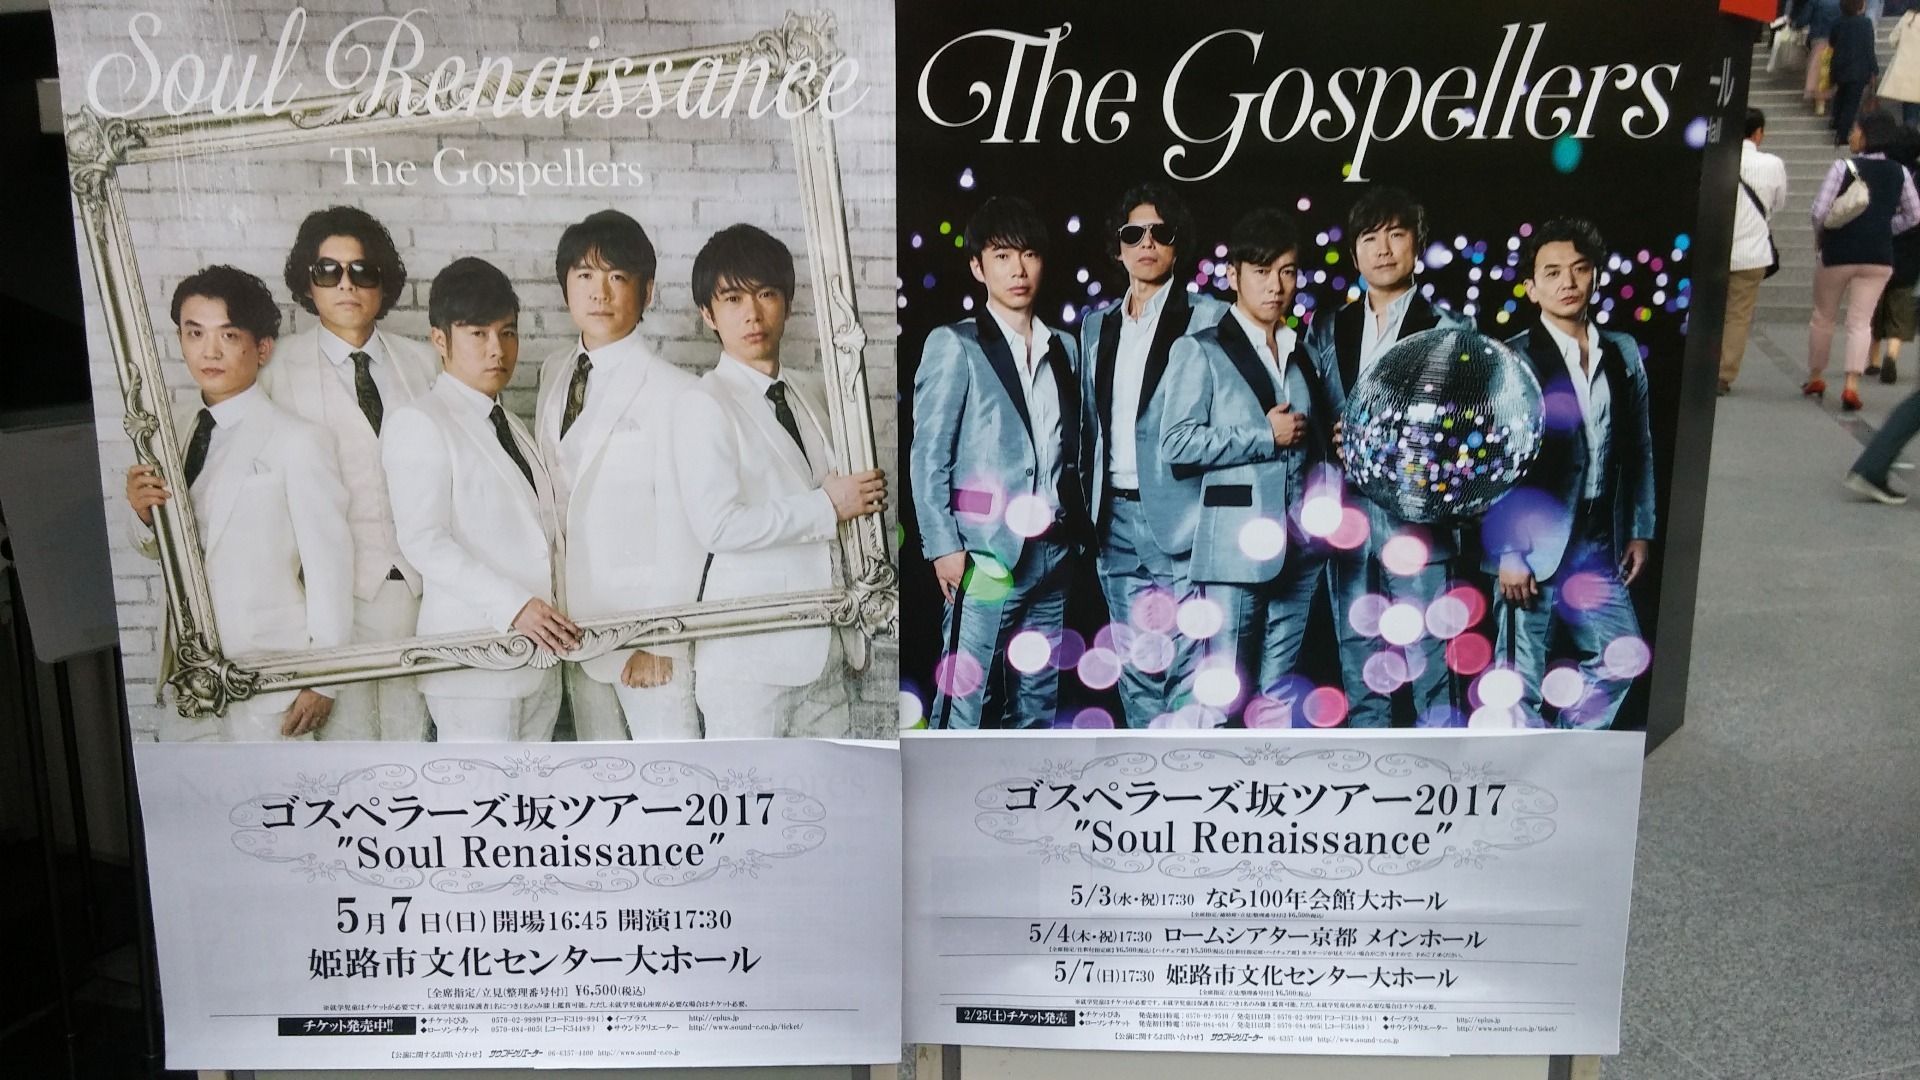 ゴスペラーズ坂ツアー17 Soul Renaissance ネタバレ In 奈良 ゴスマニア年